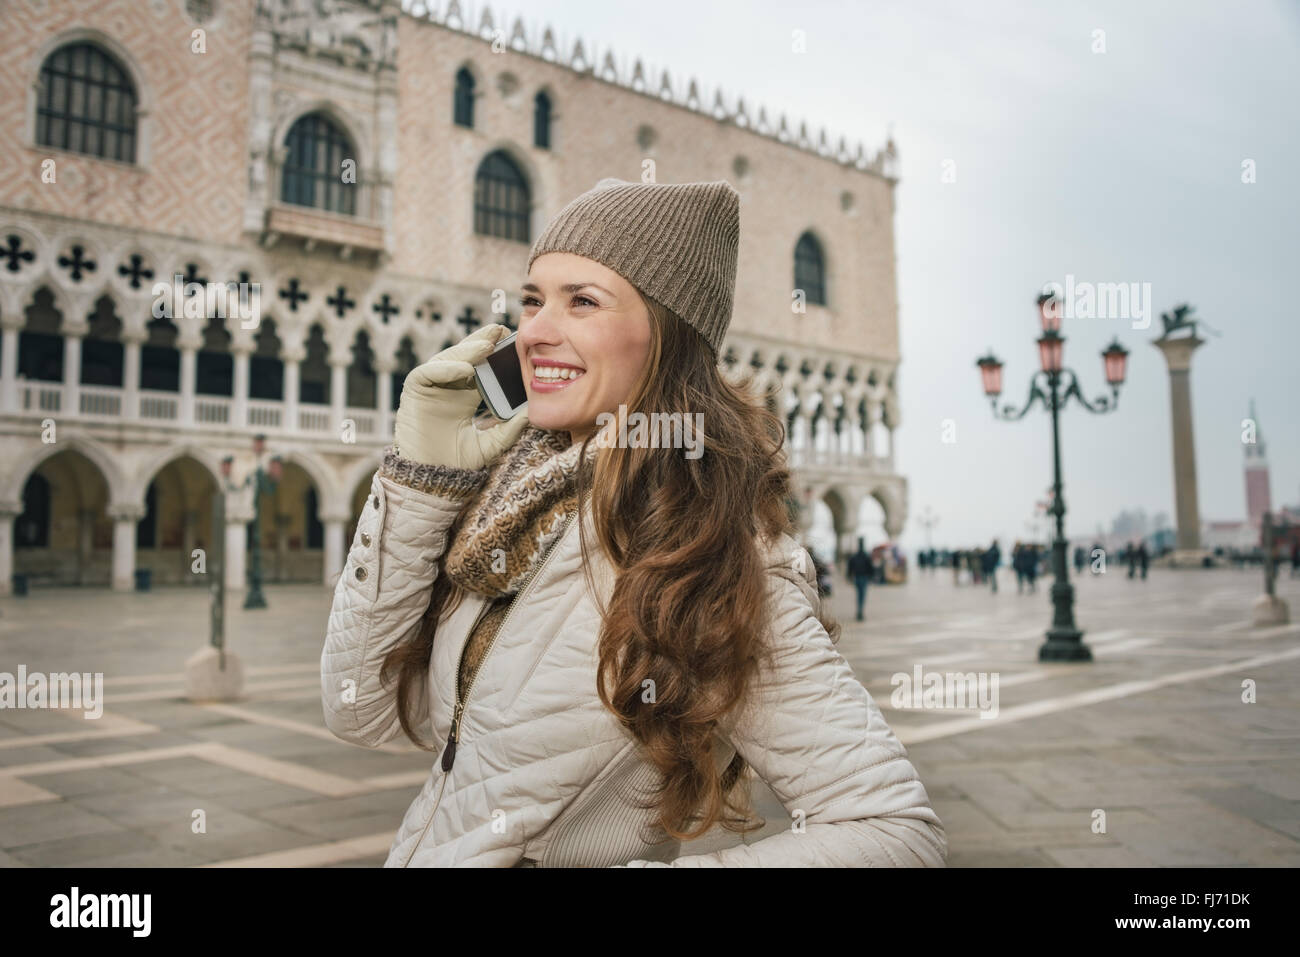 Venise, Italie charmant peut aider à tirer le meilleur parti de votre prochaine escapade d'hiver. Smiling young woman talking cell phone touristiques sur S Banque D'Images